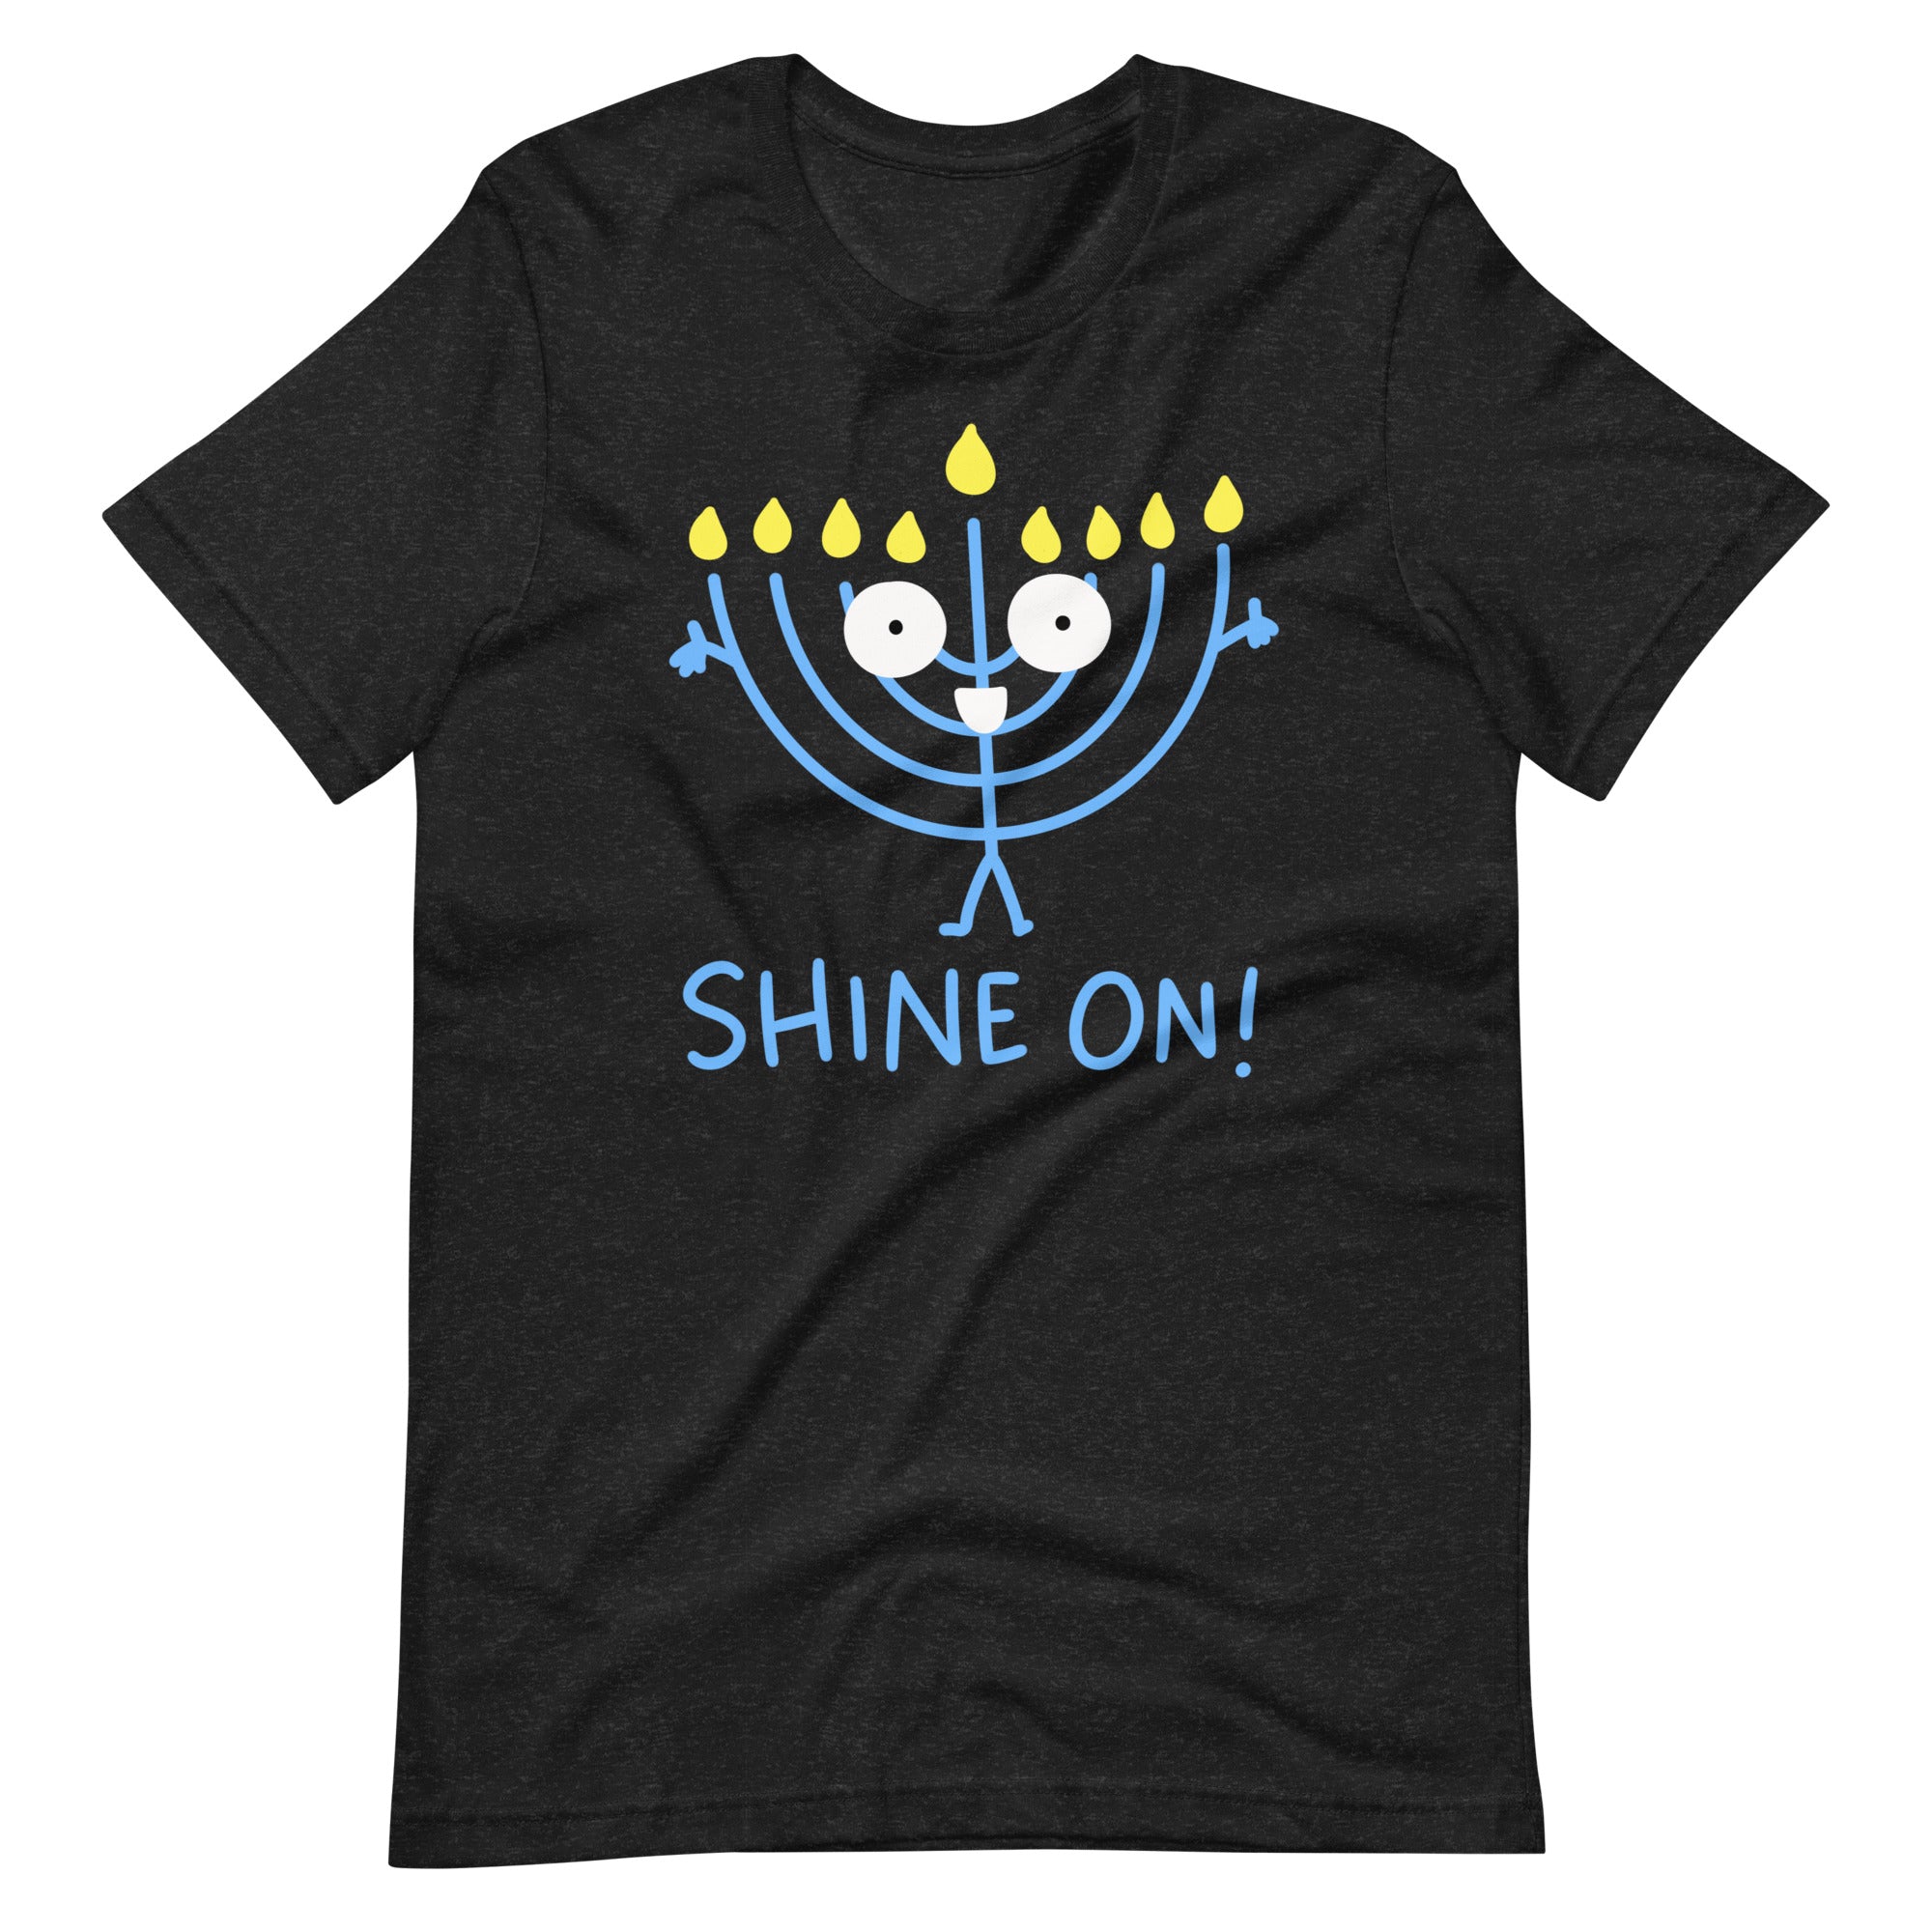 Hanukkah t shirt for Chanukah, cute Jewish holiday shirt Shine on! Hanukkiah tshirt